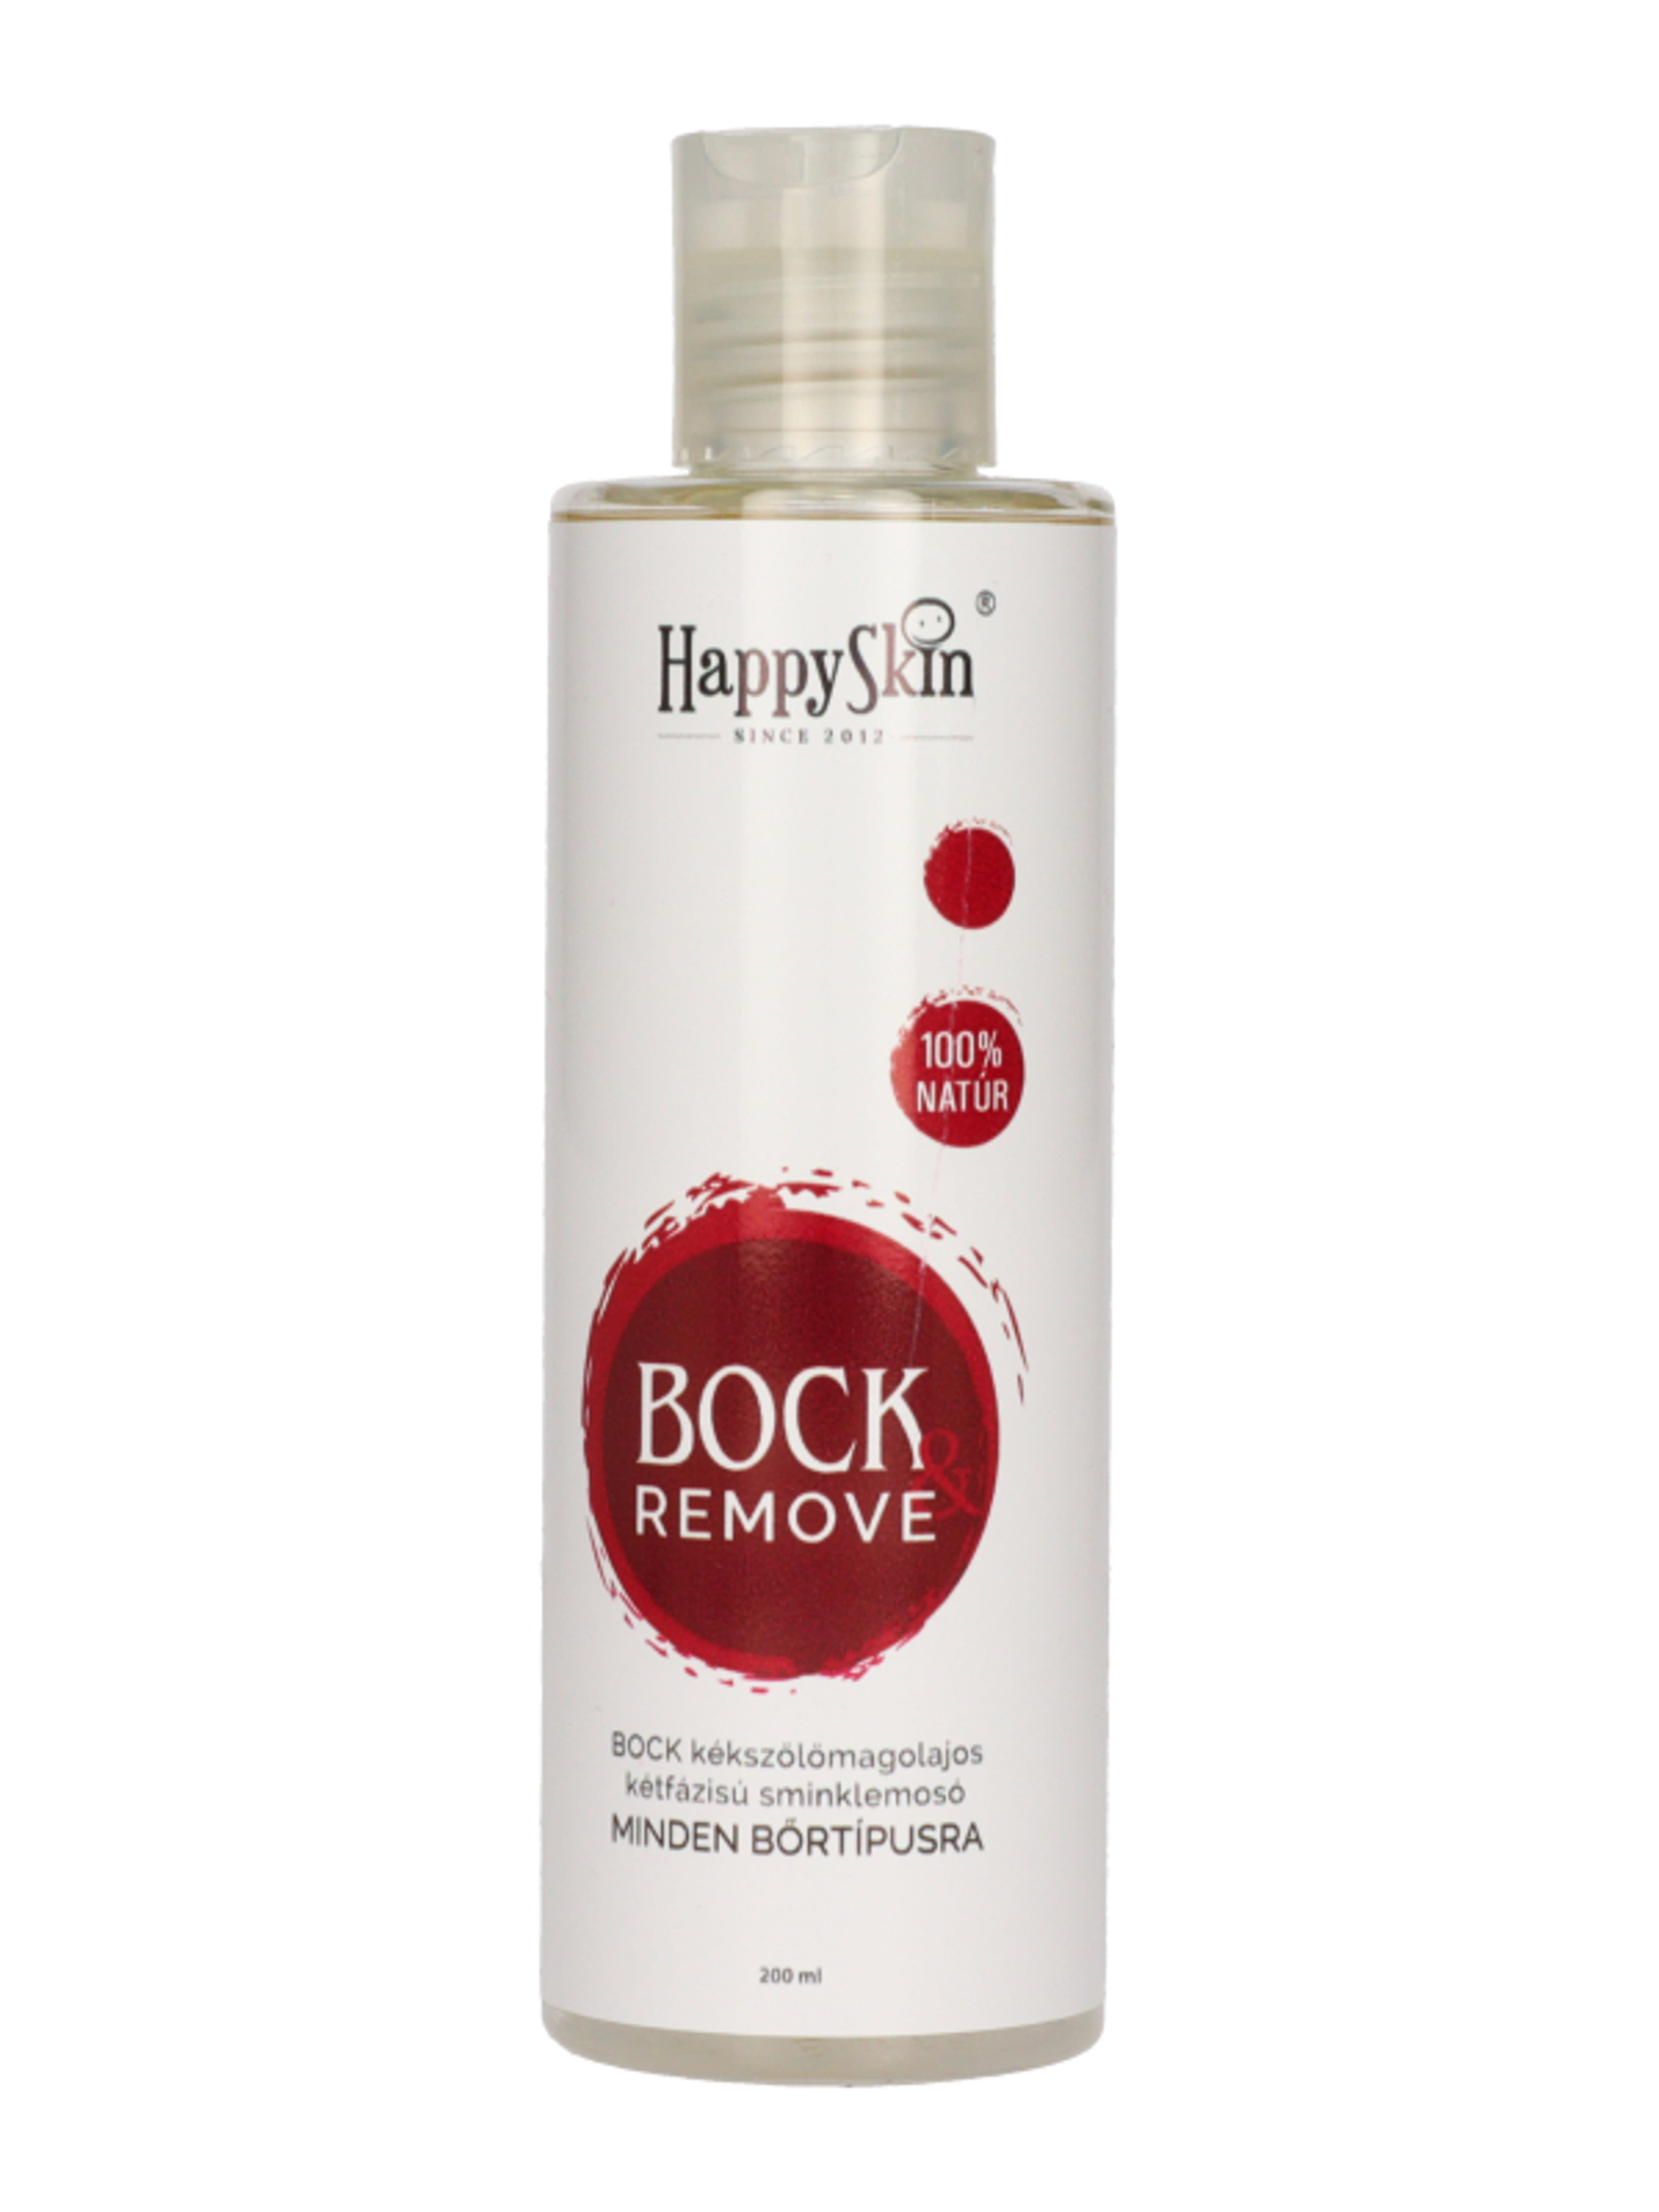 HappySkin Bock Remove kétfázisú sminklemosó - 200 ml-1